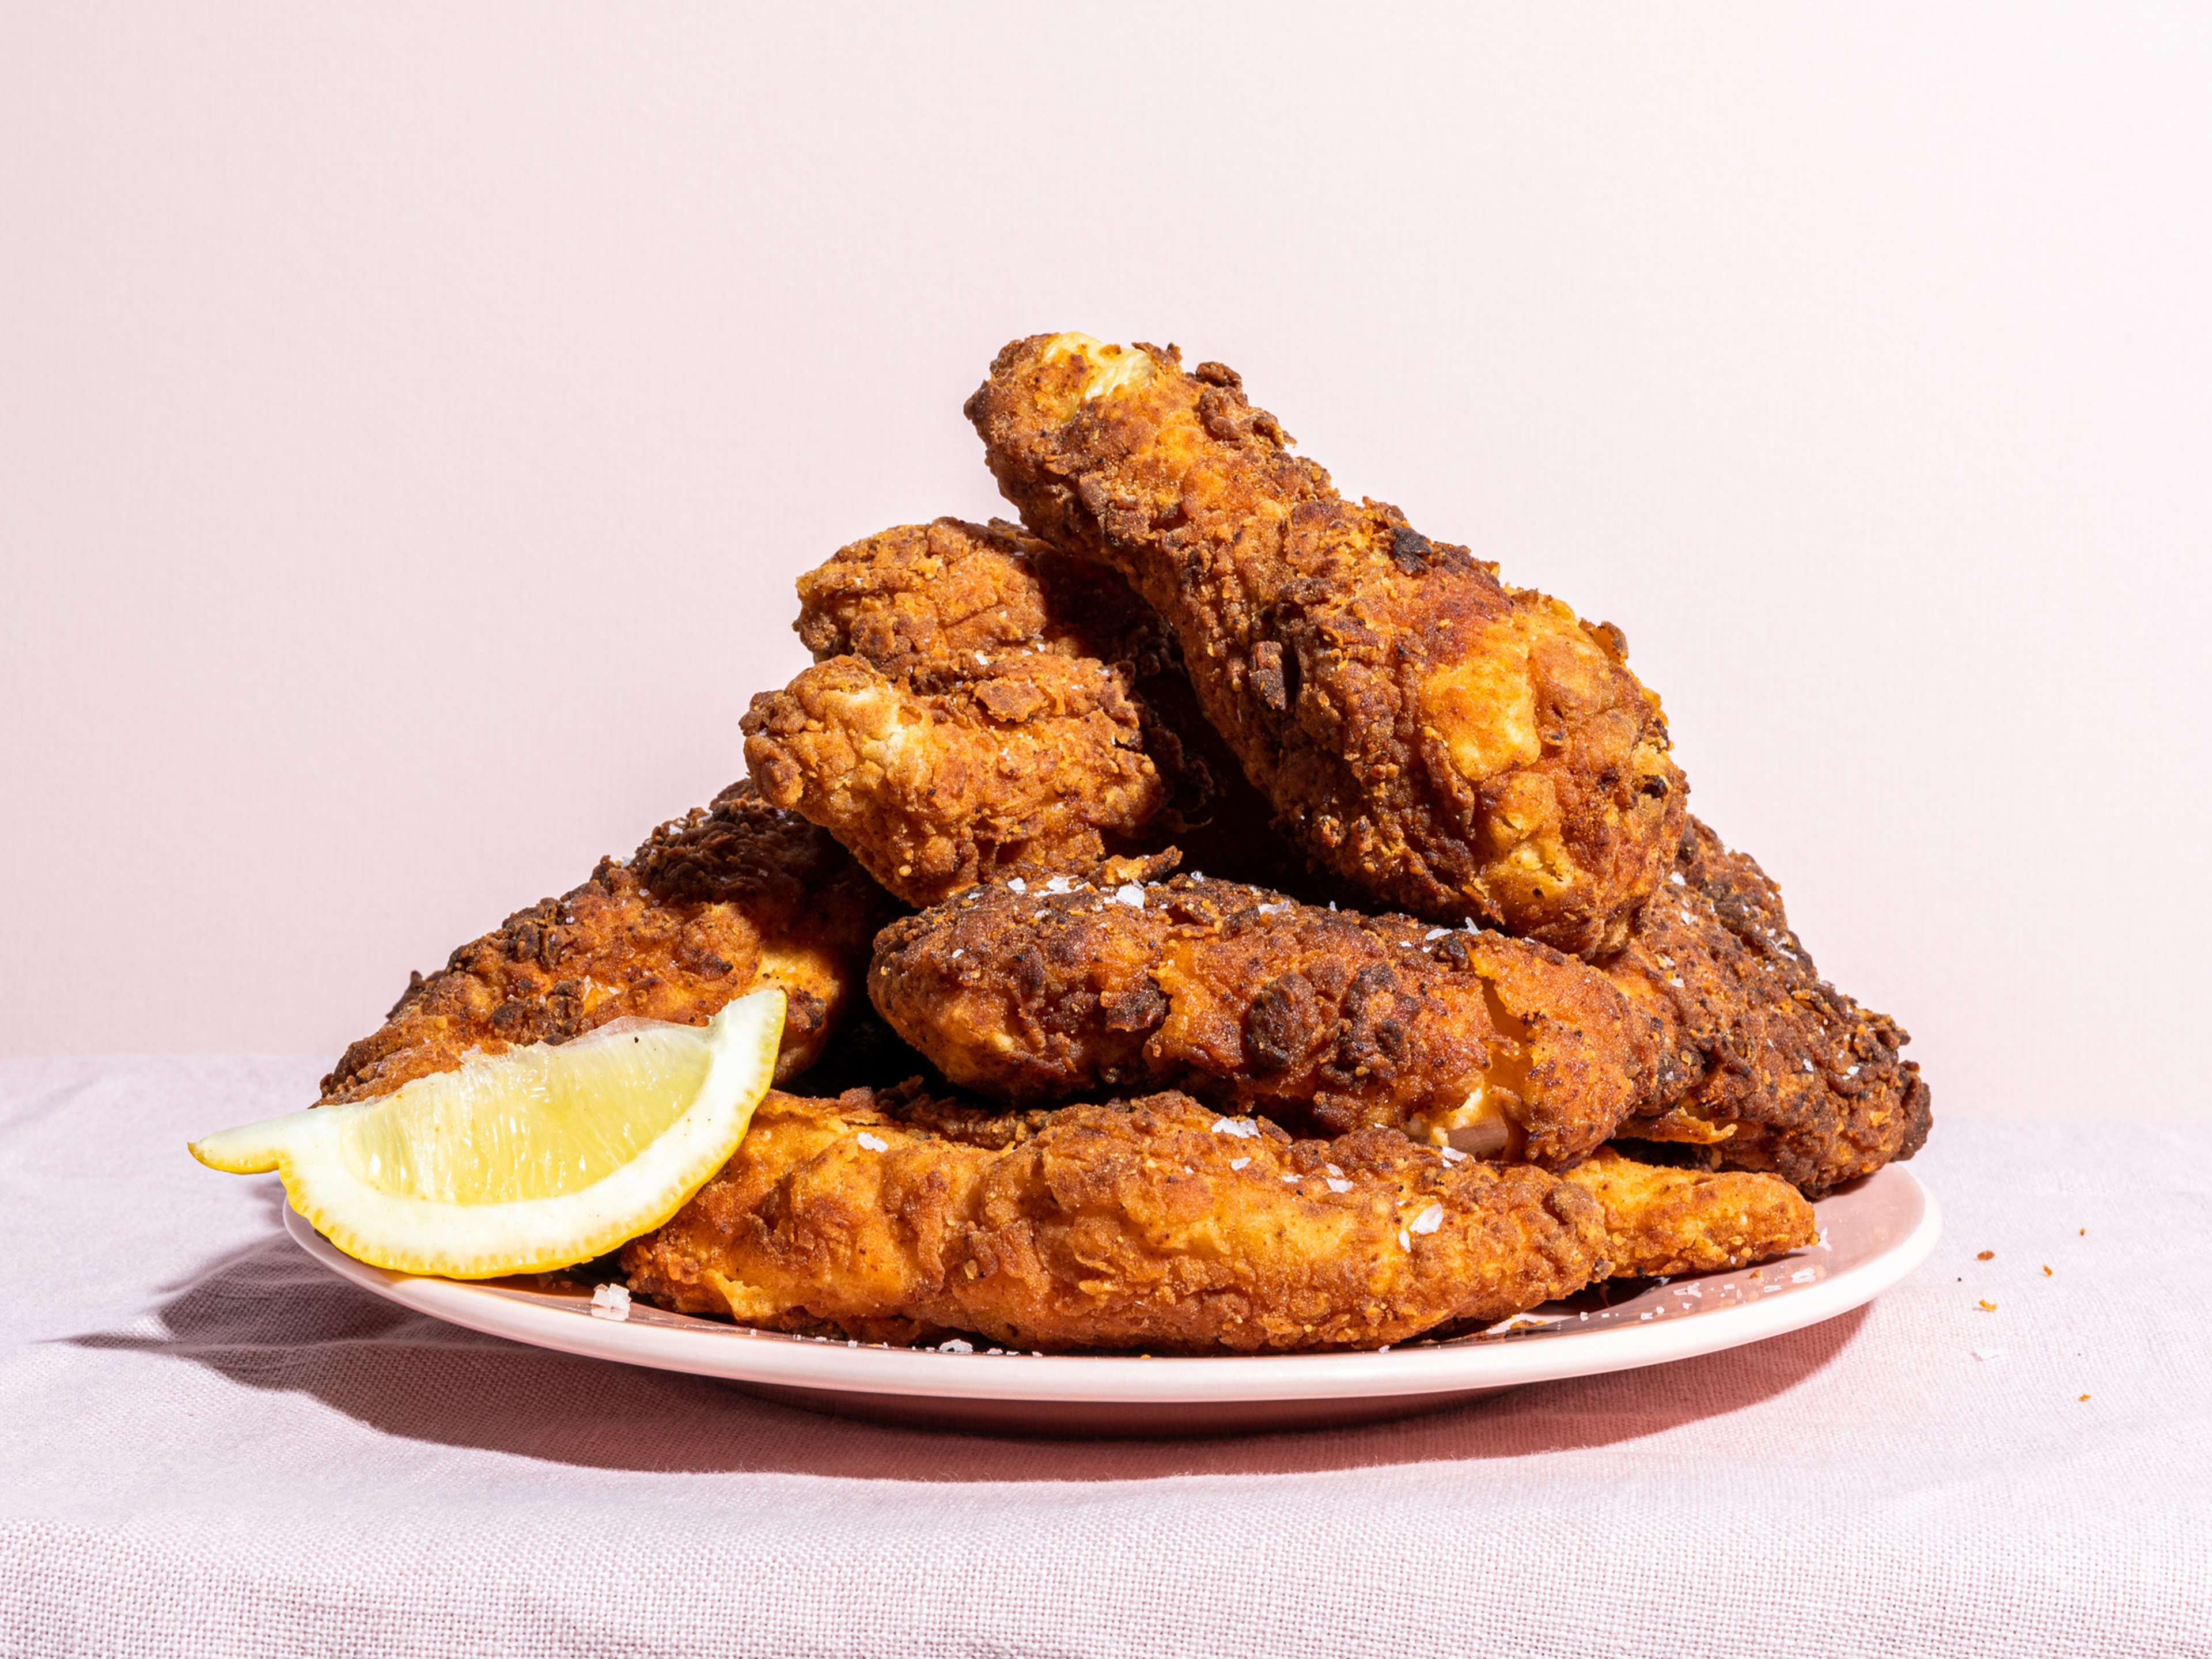 Wir testen Deep Fried vs. Air Fried Chicken: Welche Methode ist besser?